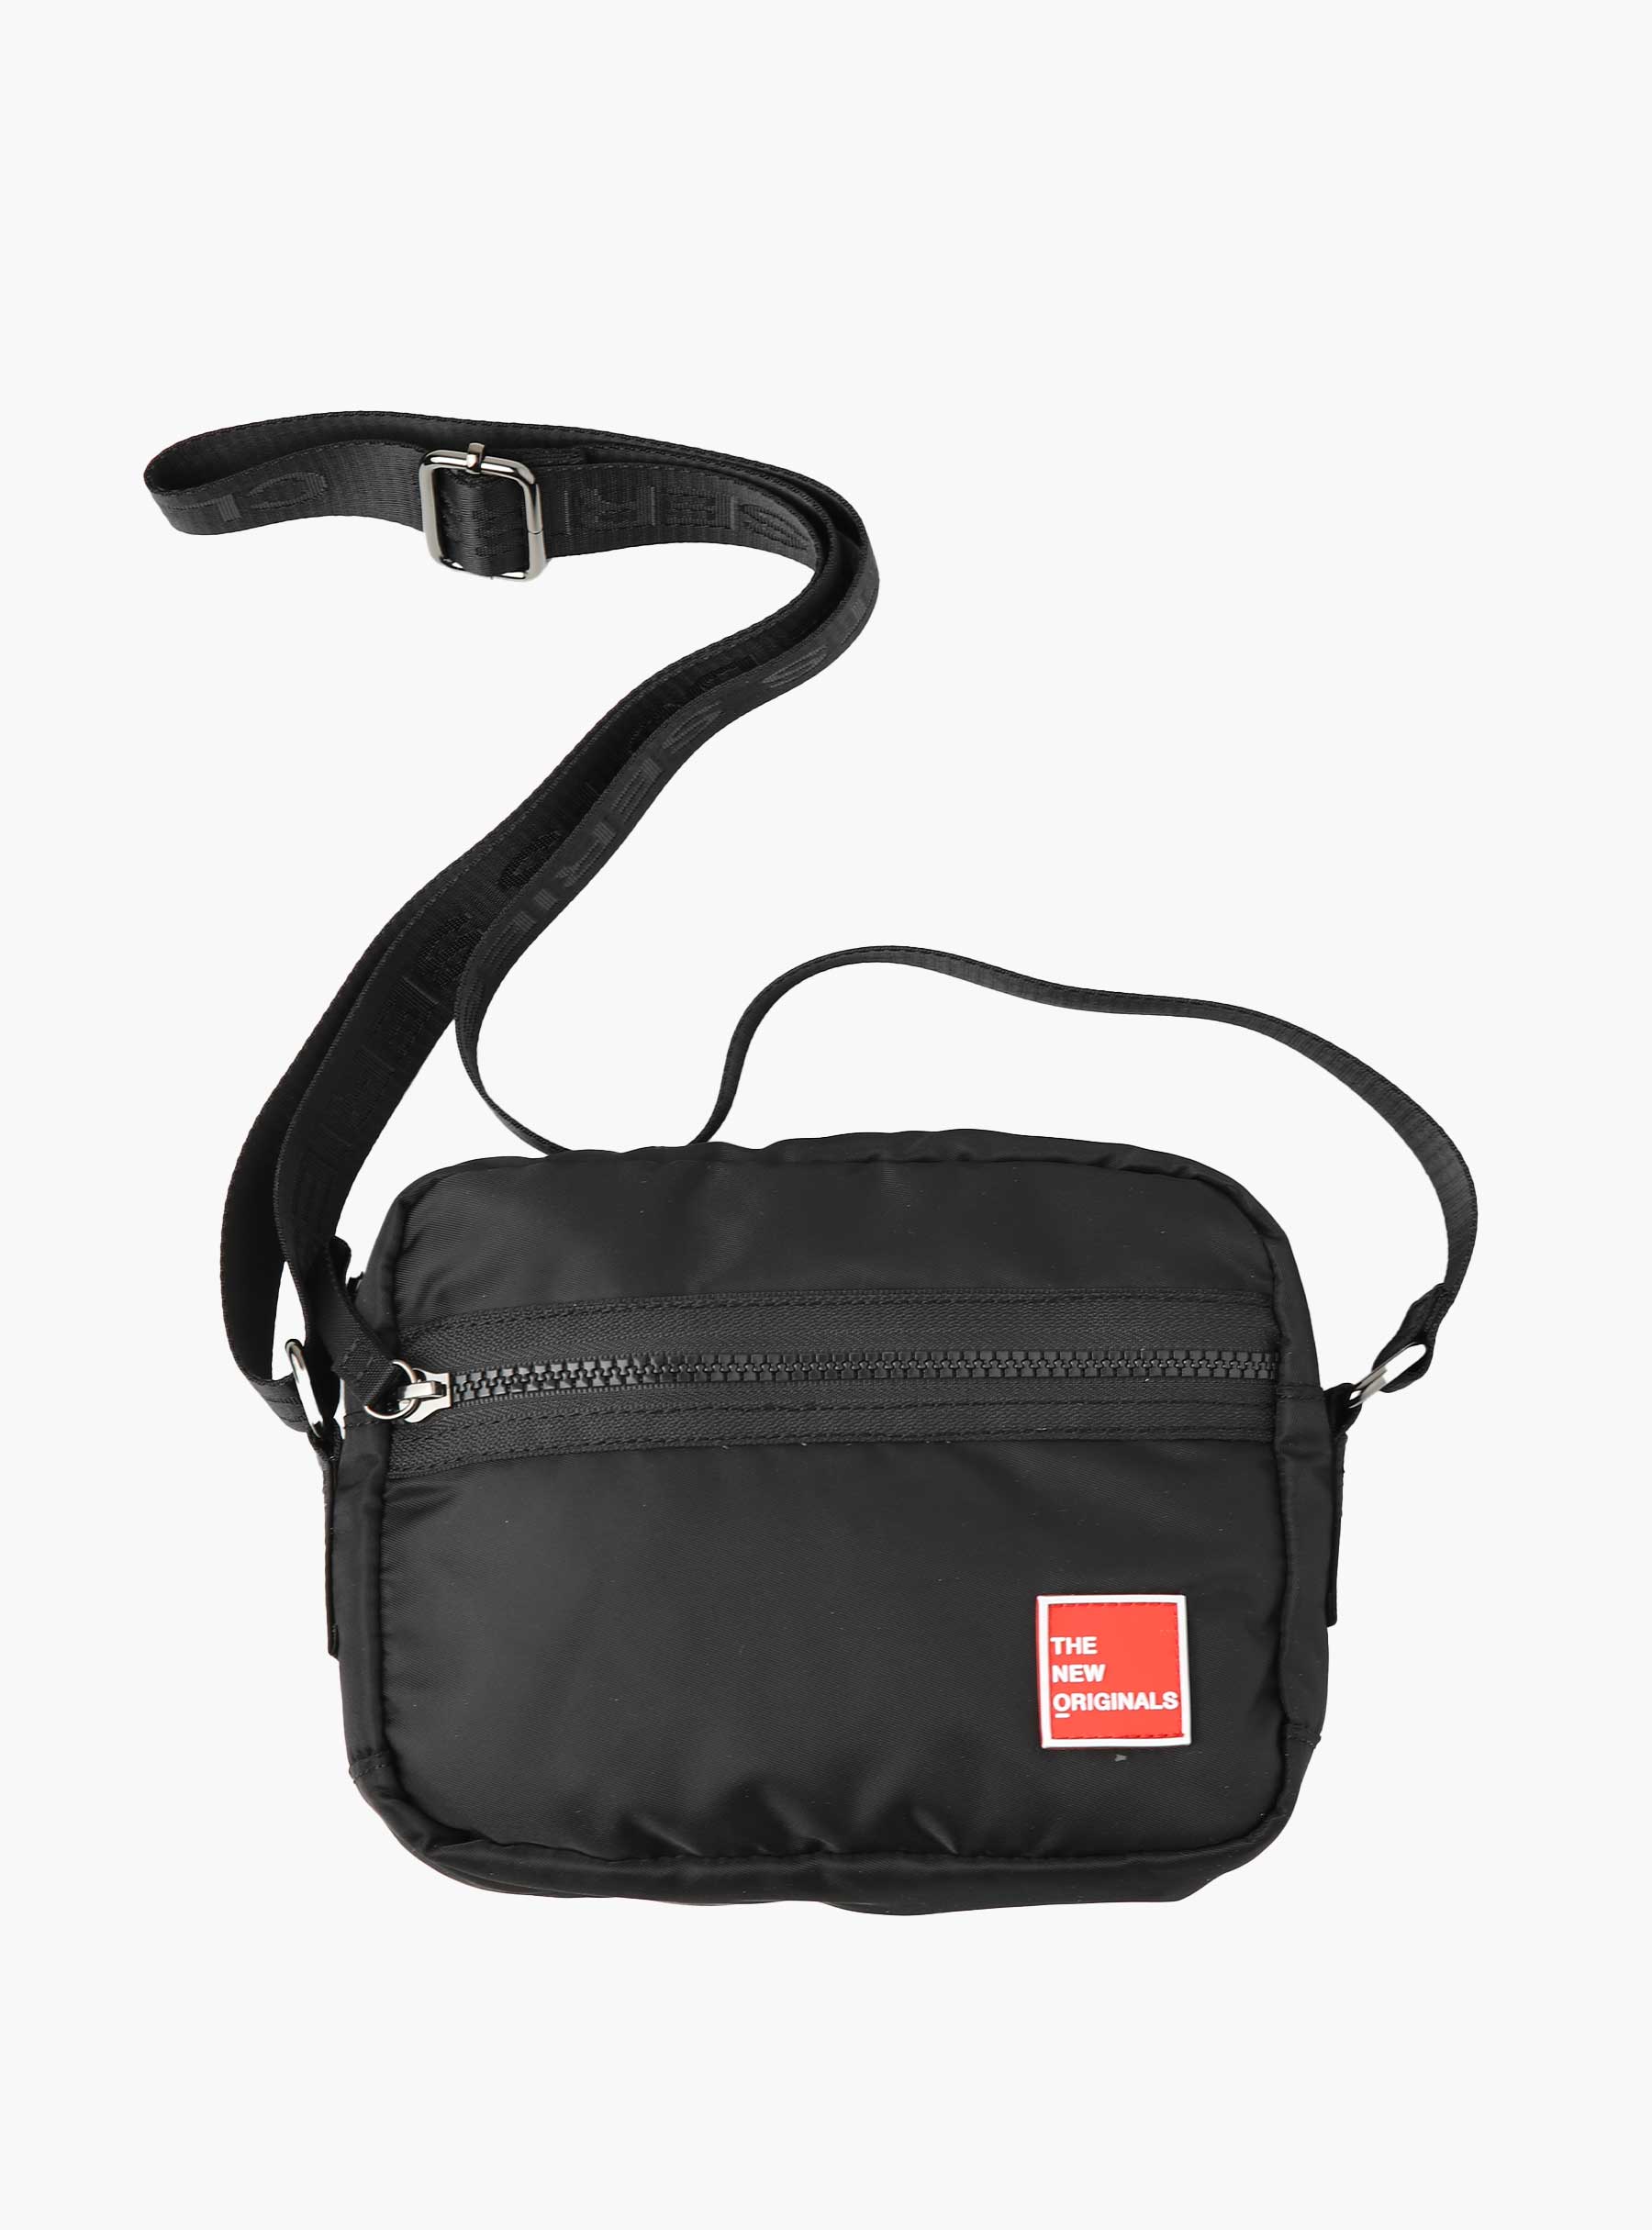 The New Originals Mini Messenger Bag Black 900MMRE23.999 | Freshcotton